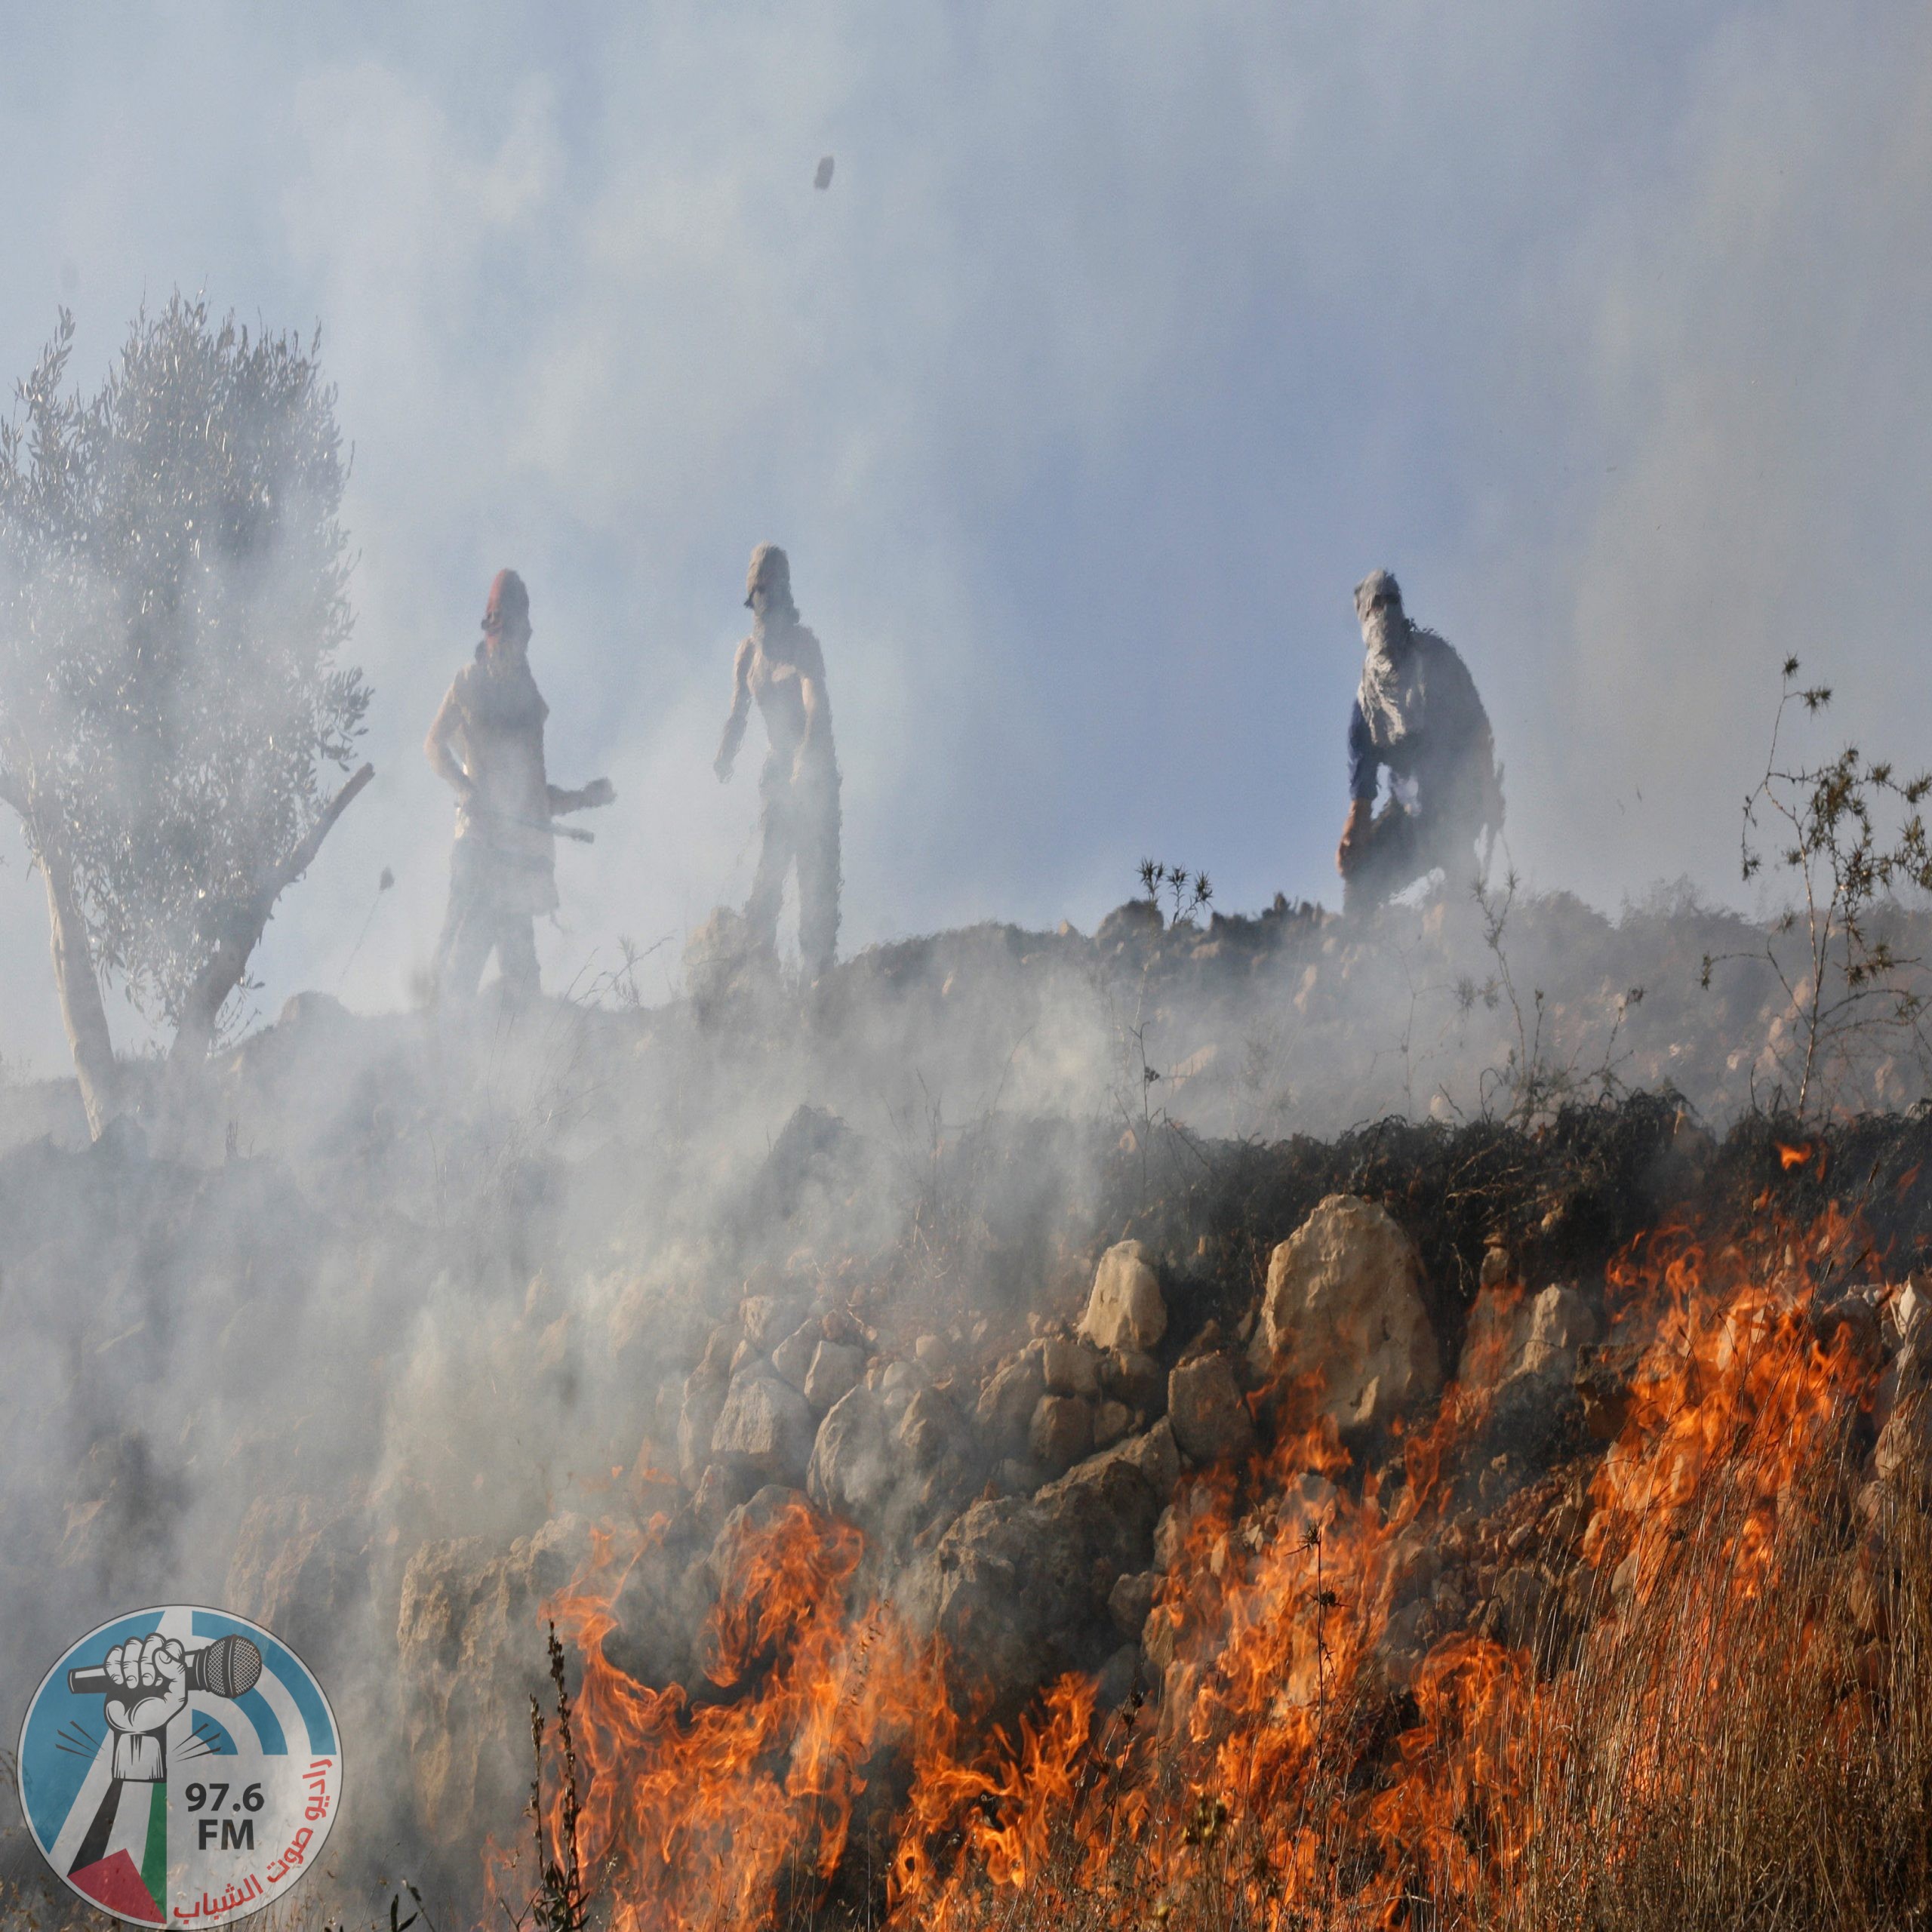 عصابات المستوطنين تضرم النار بأشجار زيتون في حوارة جنوب نابلس